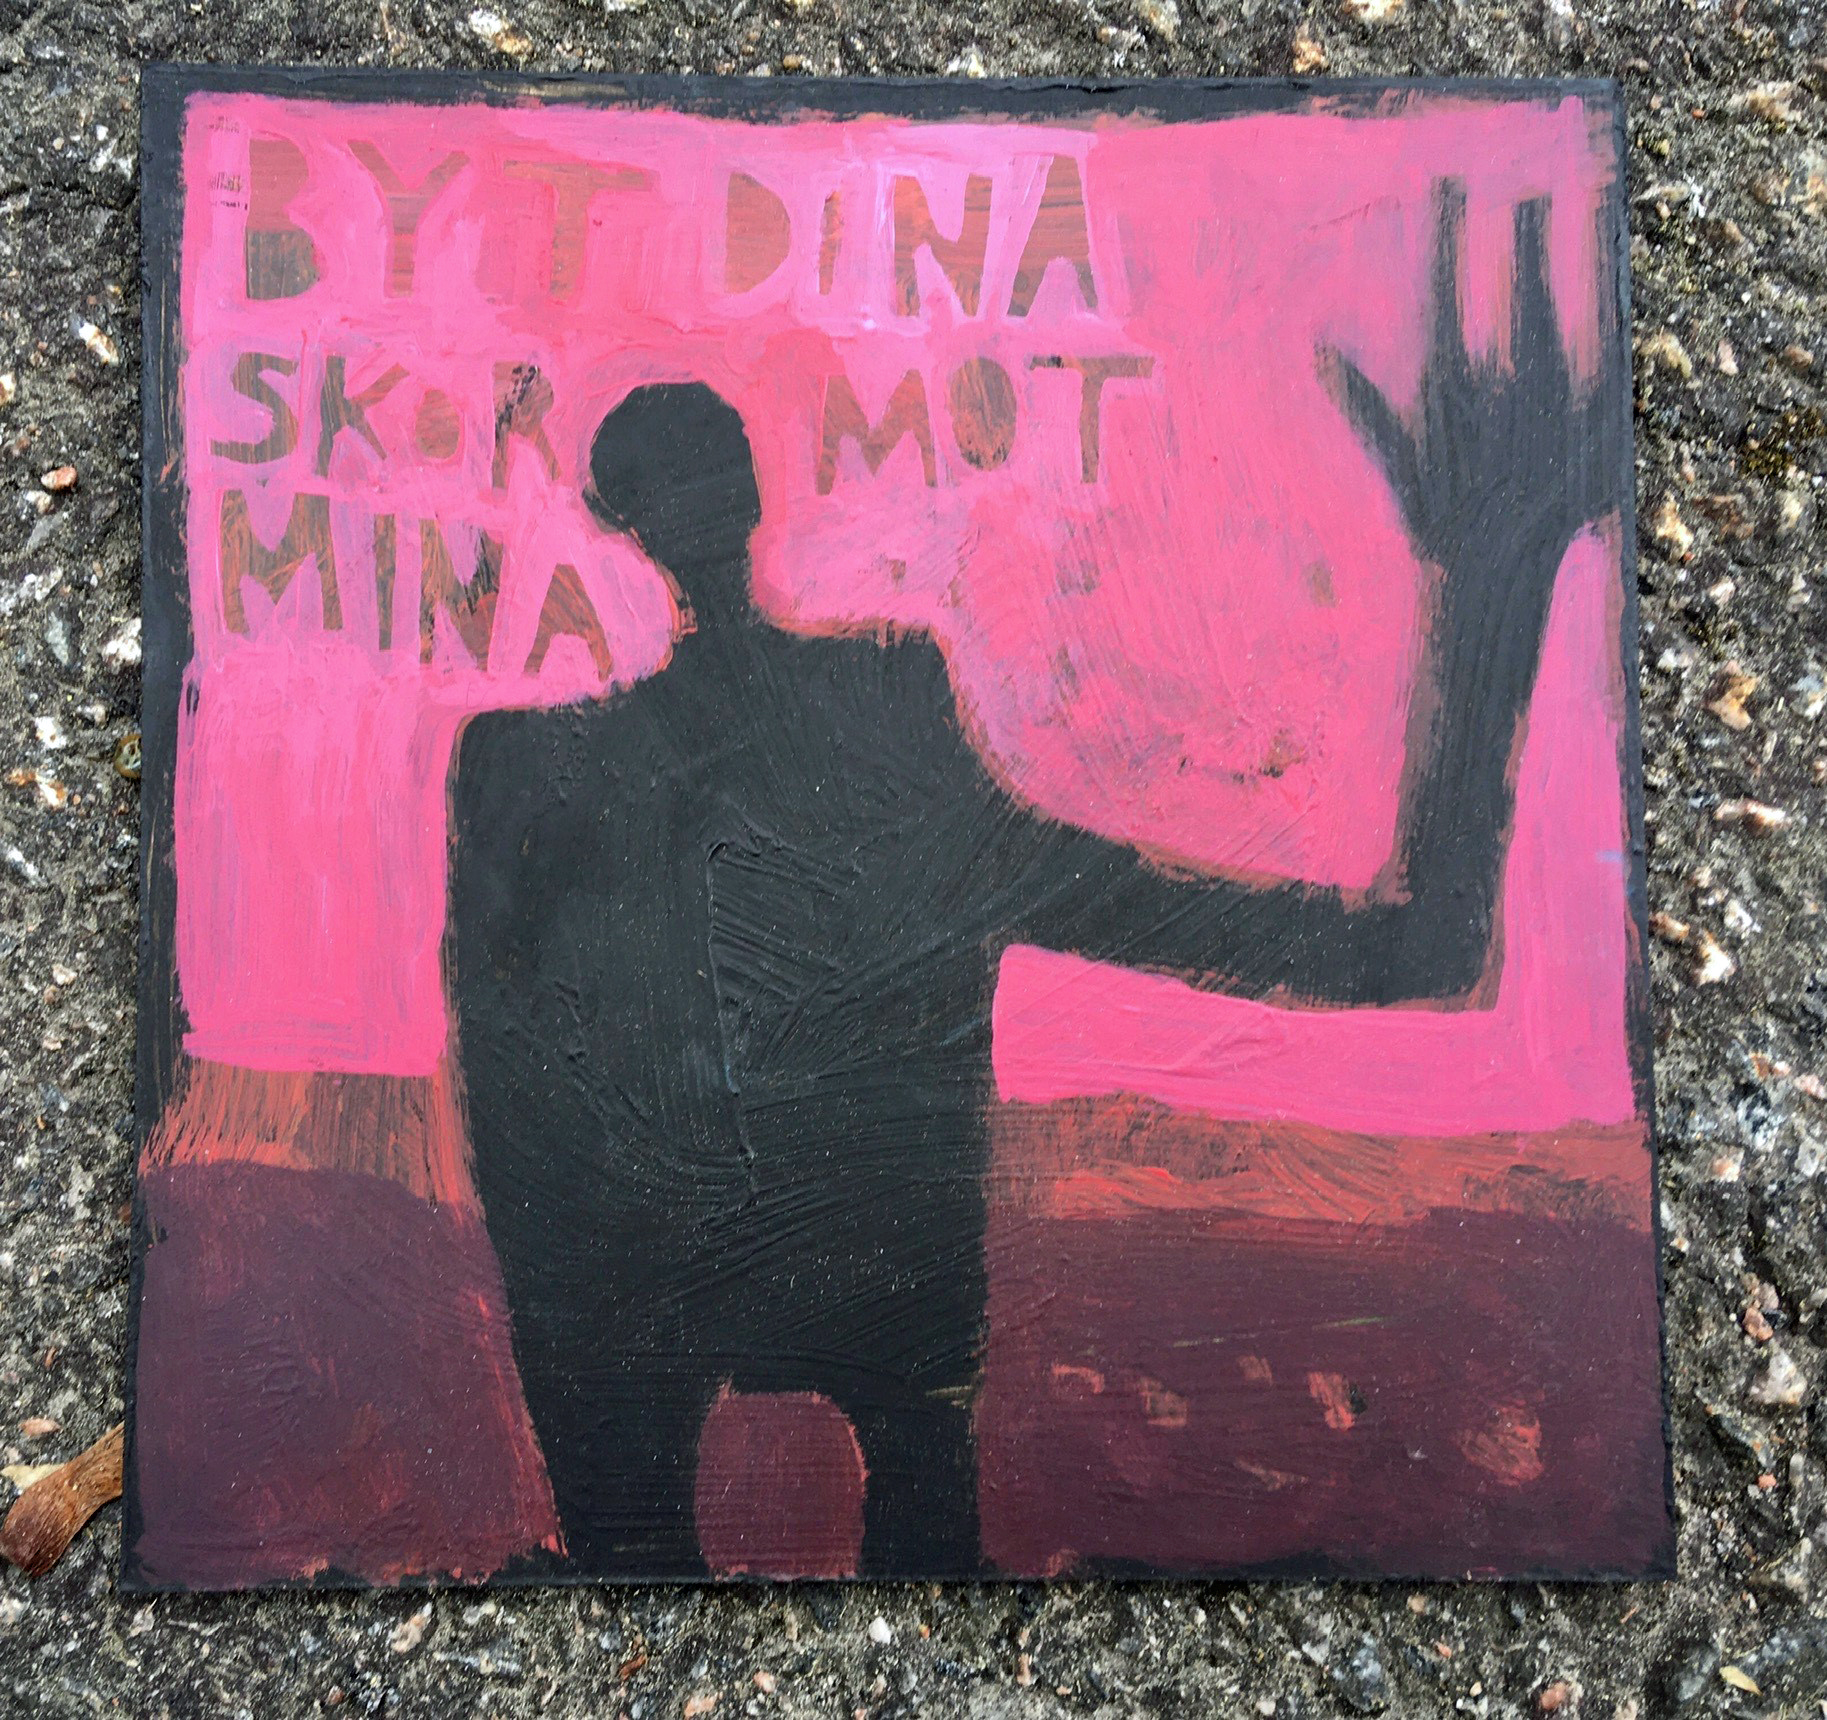 Målning av Mika Liffner, en svart figur lyfter ena armen, mot en rosa bakgrund